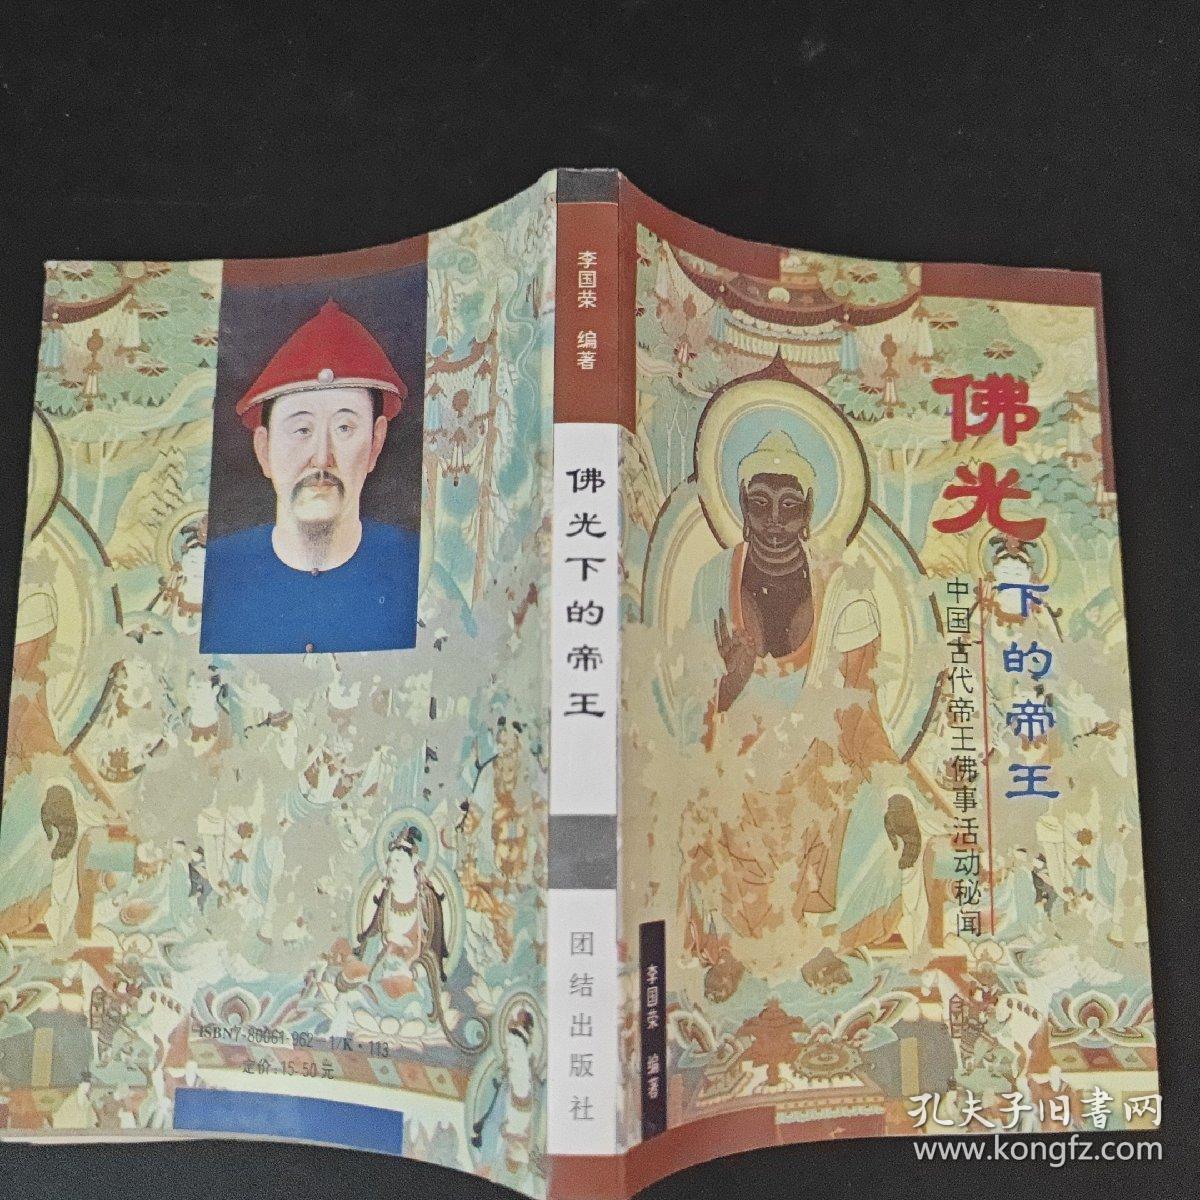 佛光下的帝王:中国古代帝王佛事活动秘闻